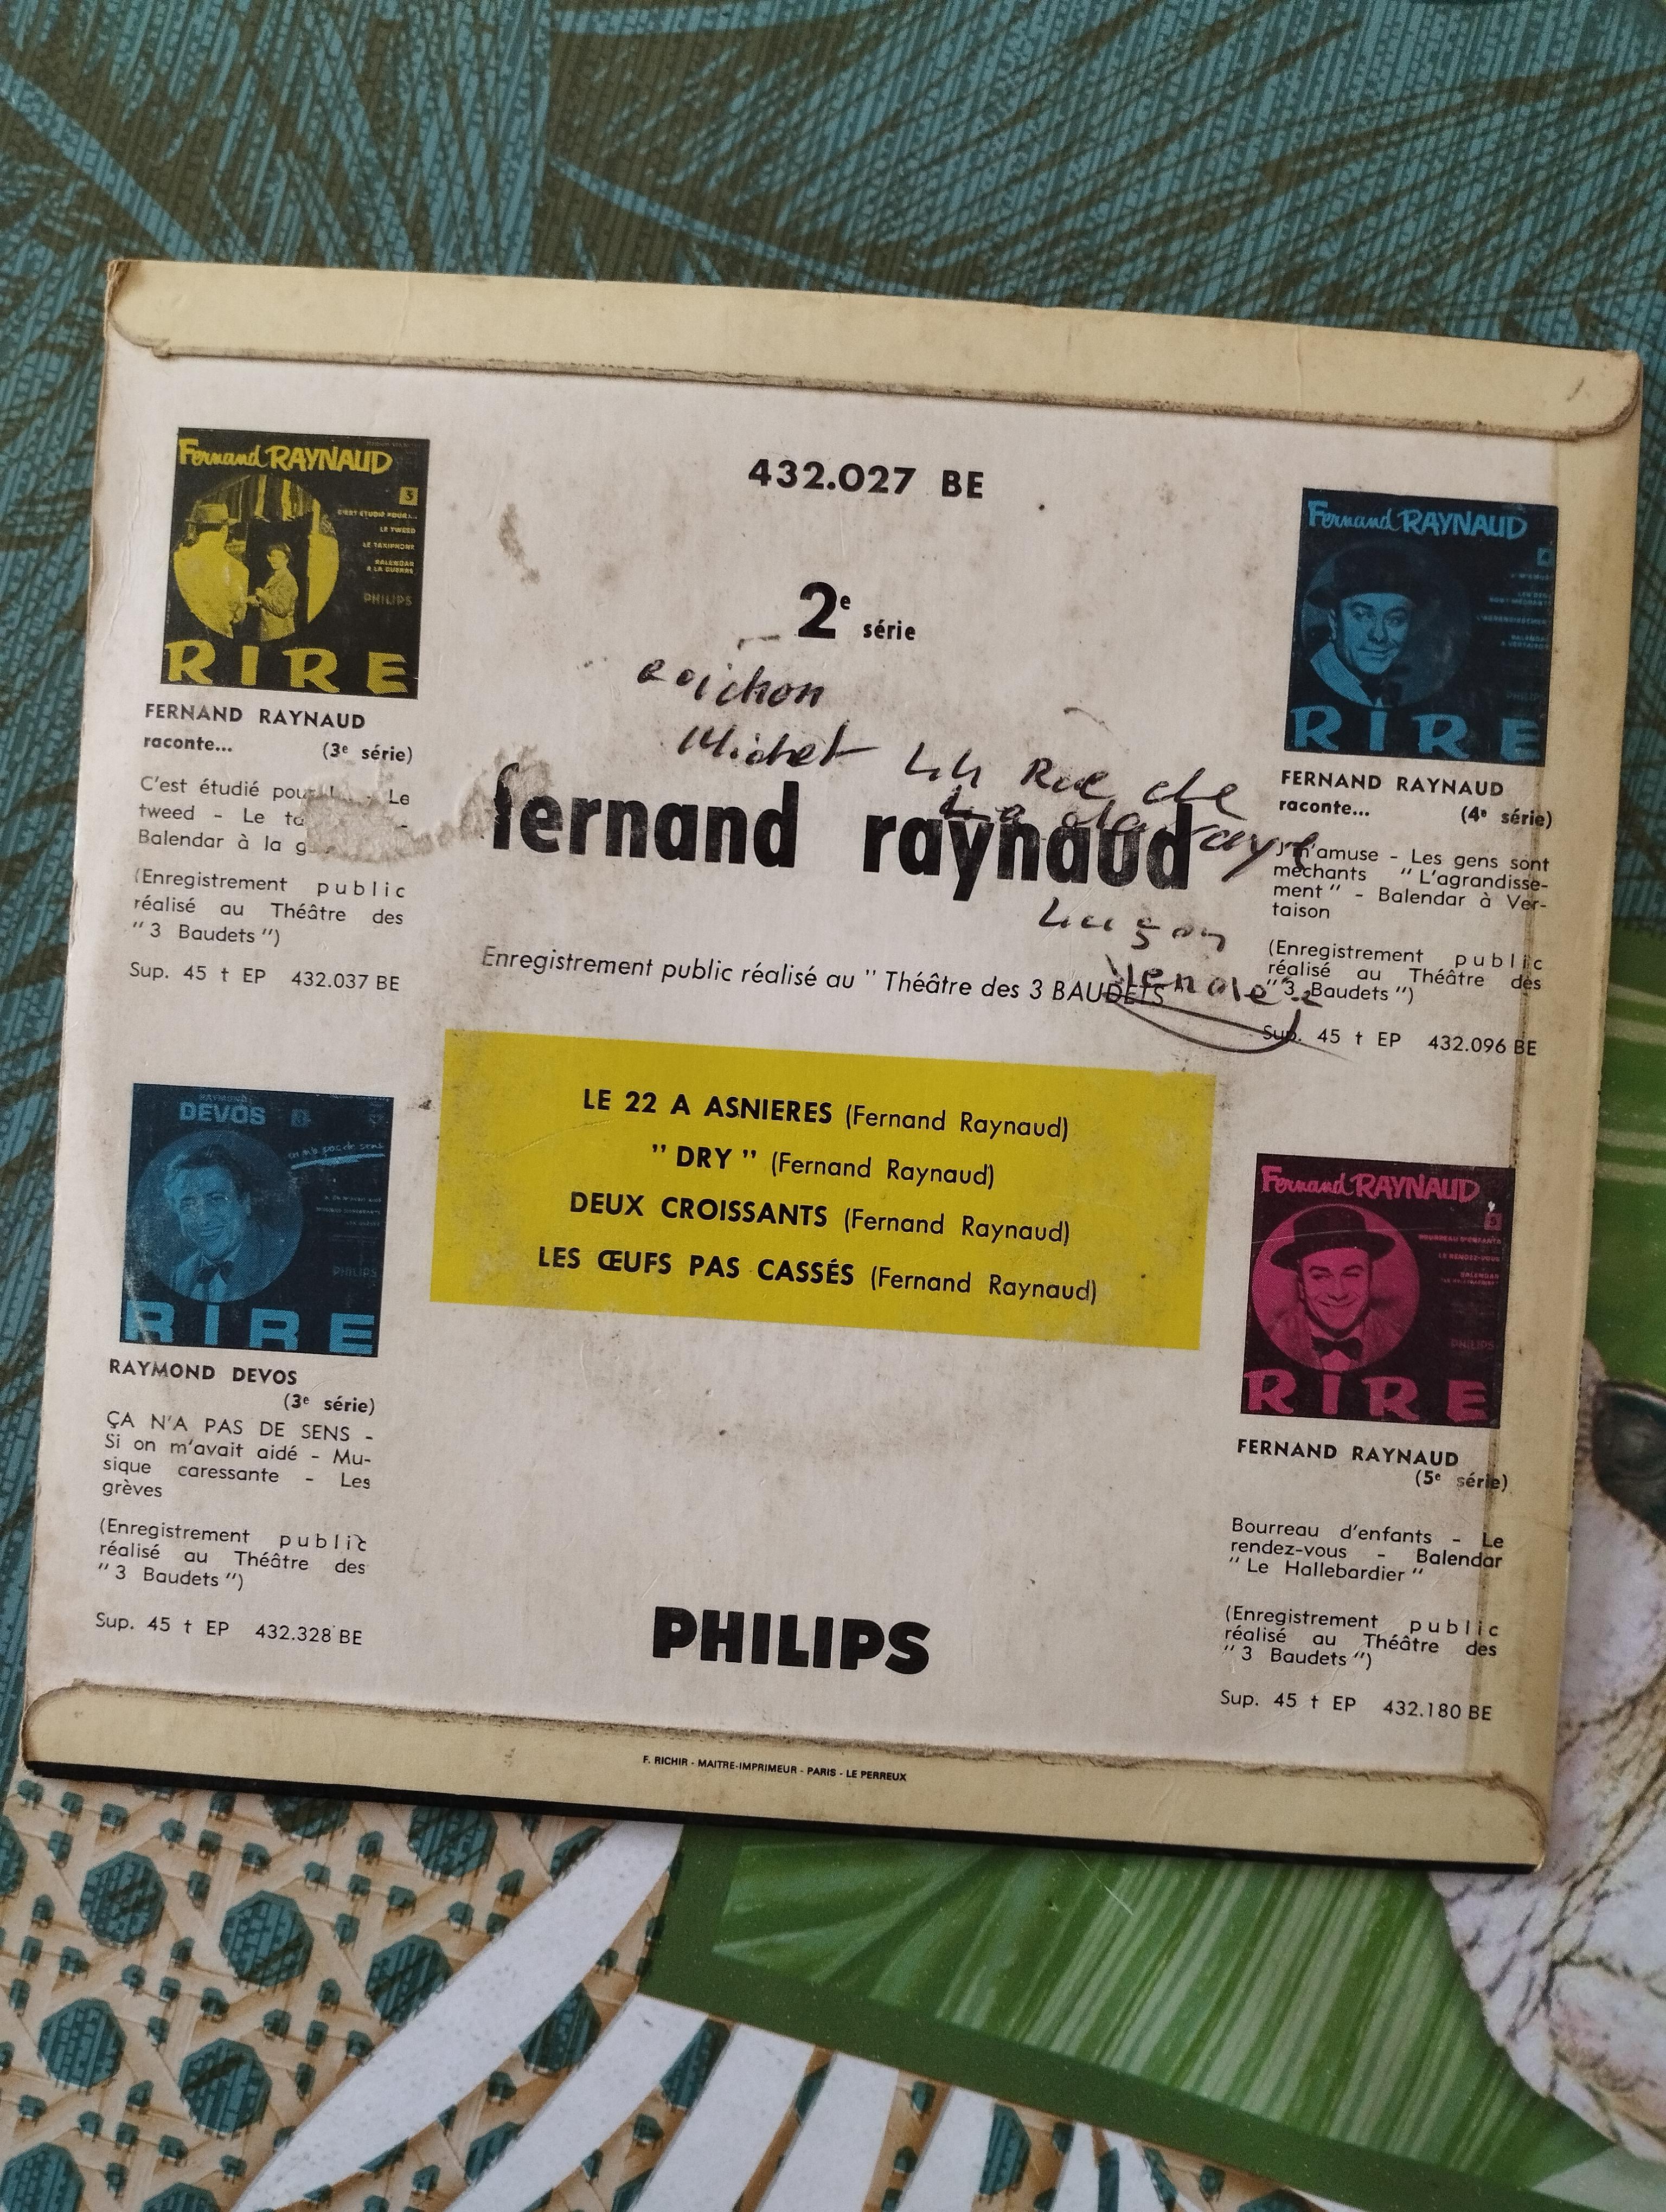 troc de troc disque vinyle 45t fernand raynaud - le 22 à asnières image 1